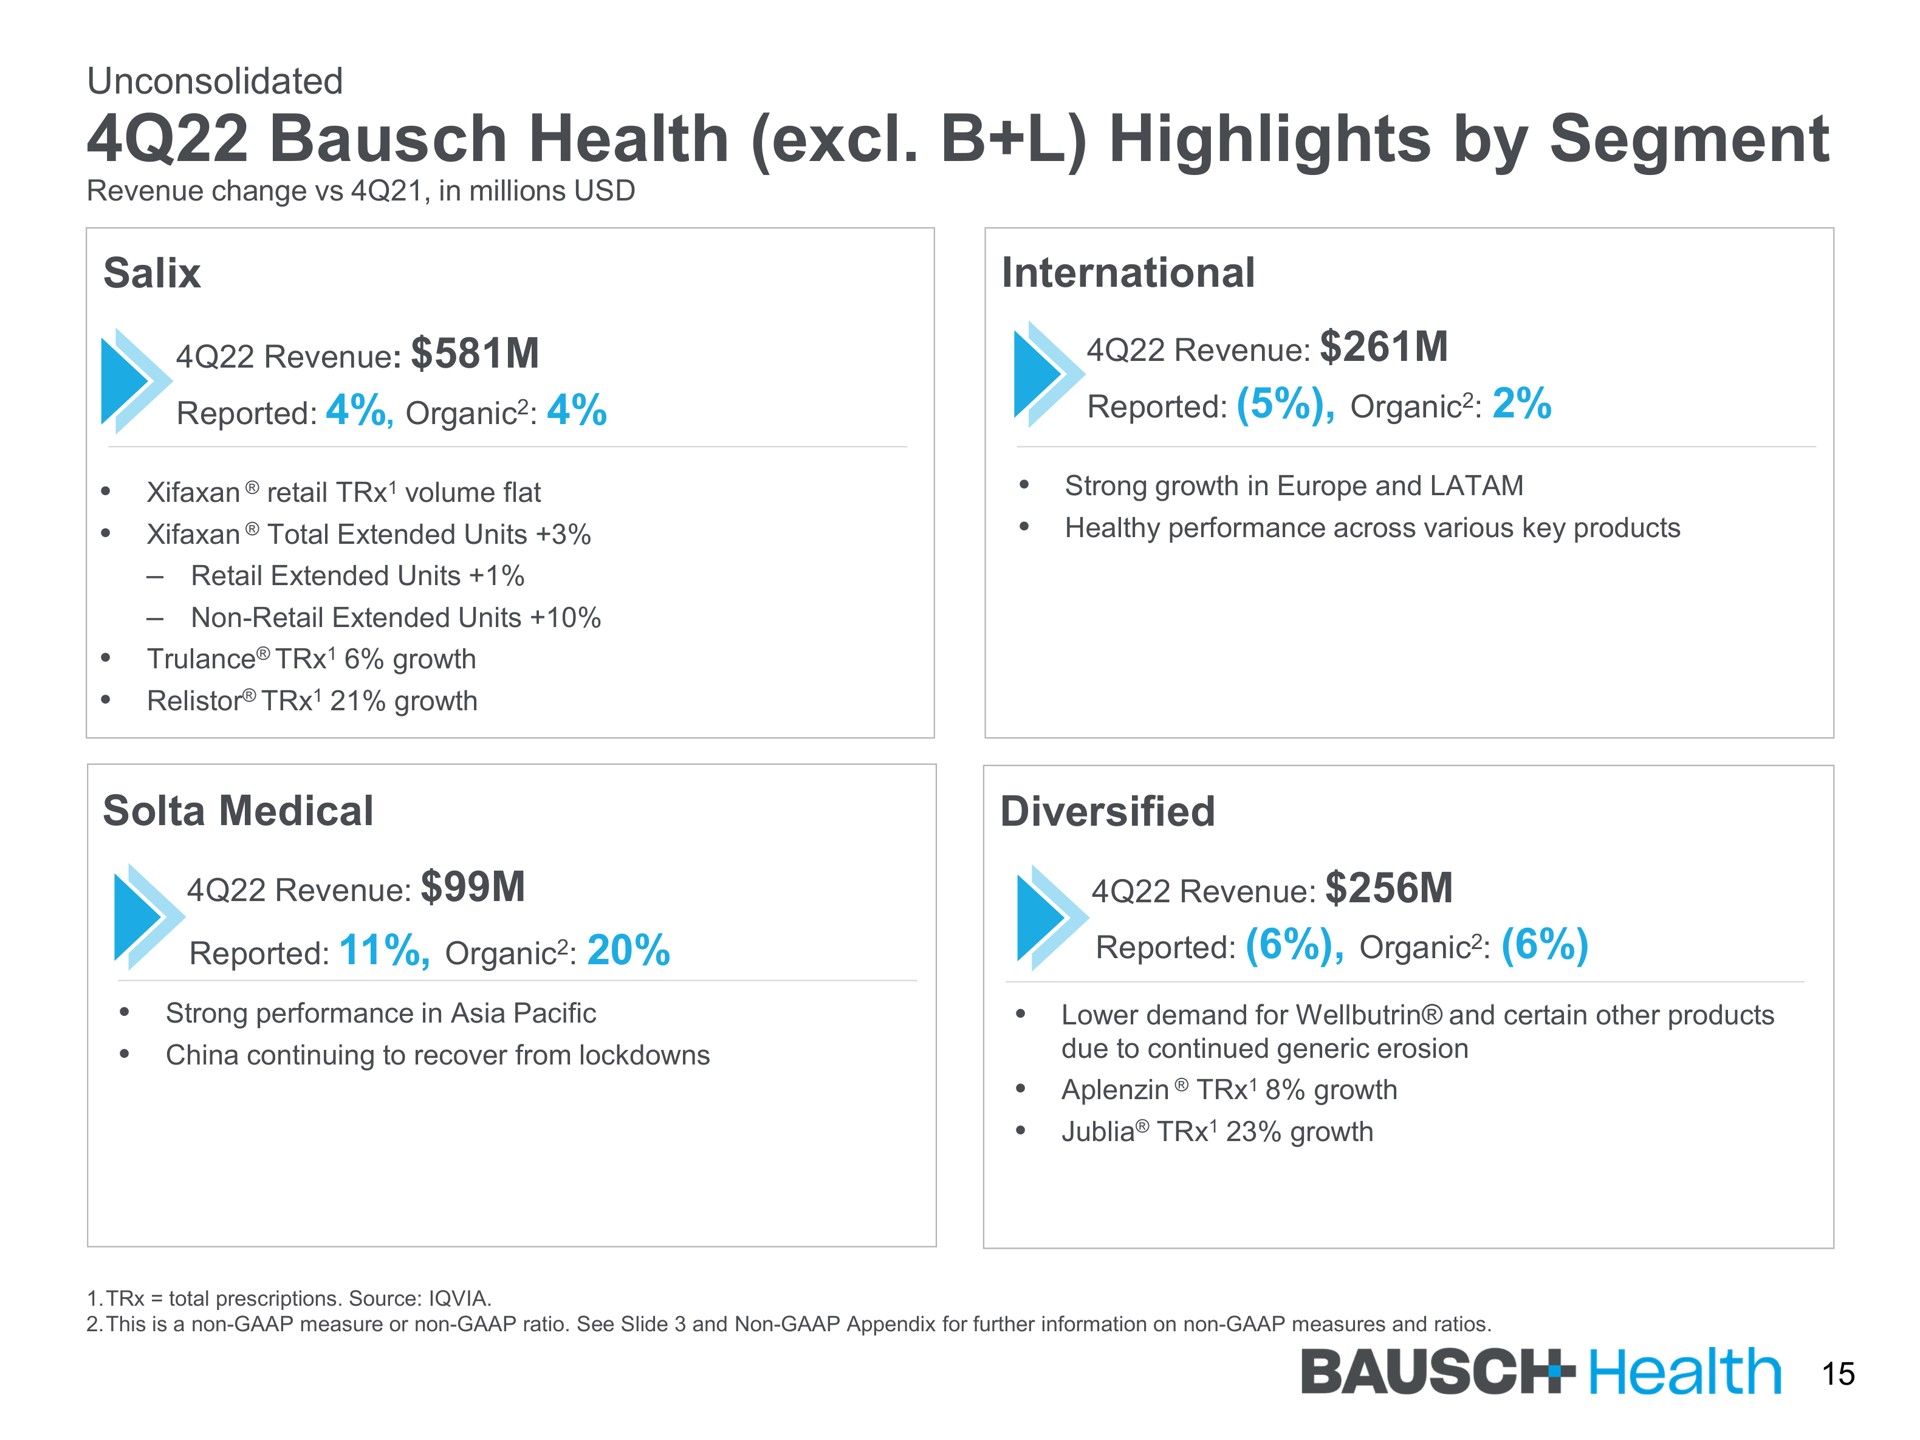 health highlights by segment | Bausch Health Companies